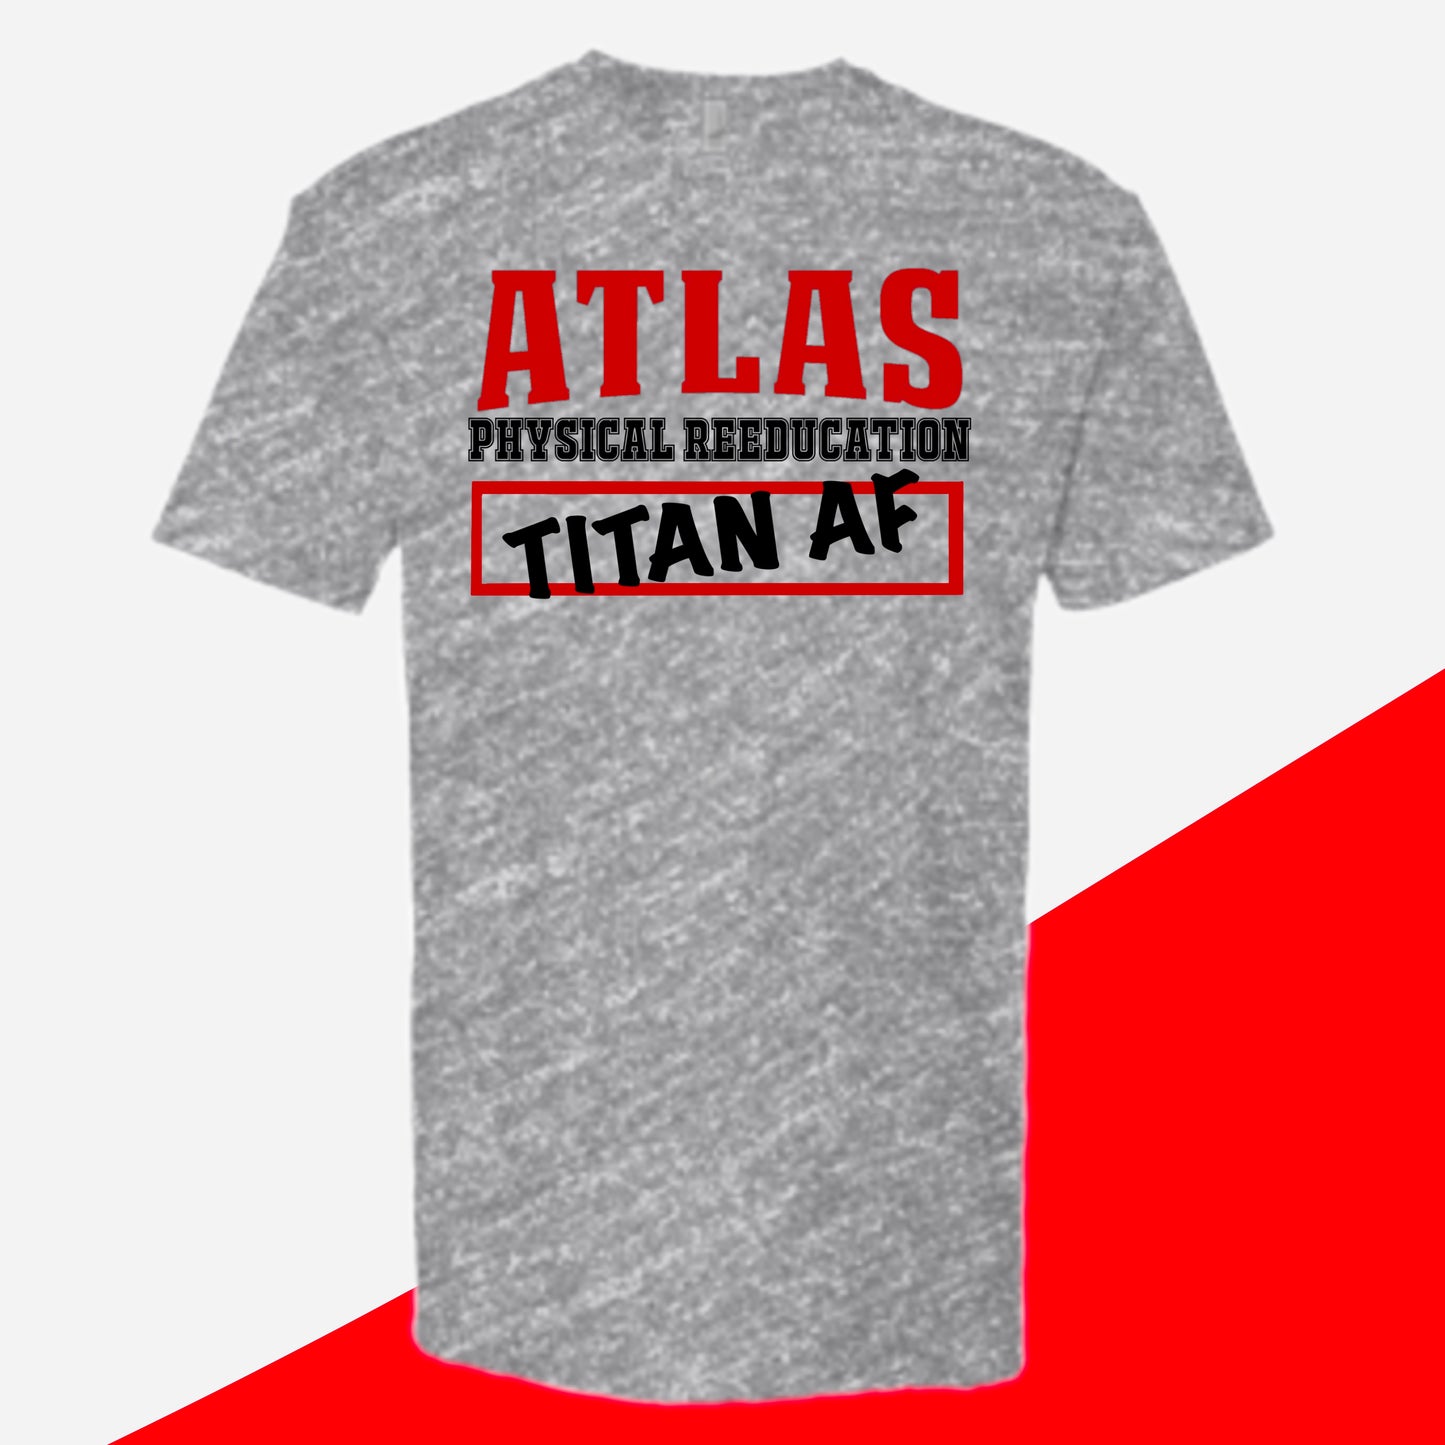 Titan AF!